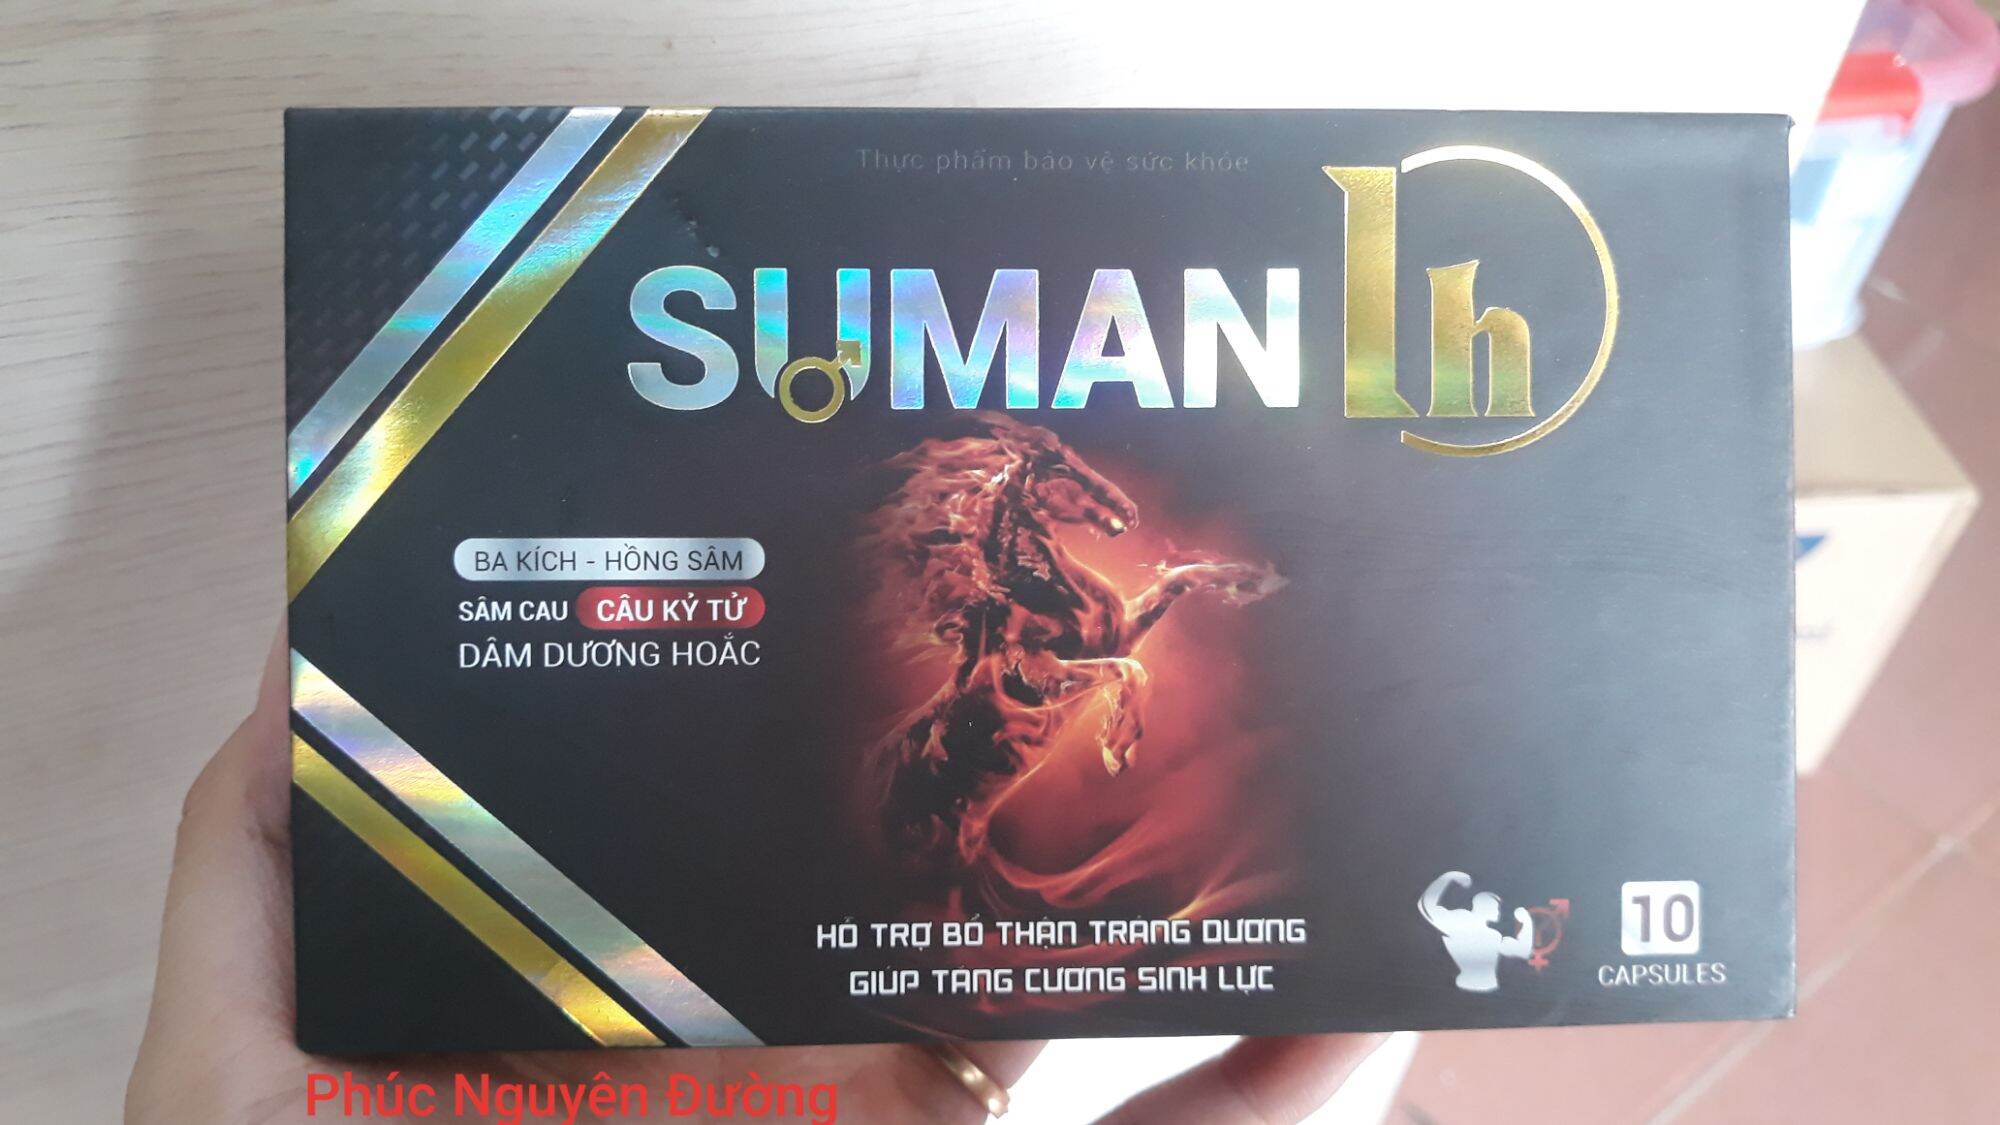 SuMan 1h - cải thiện chức năng sly nam giới